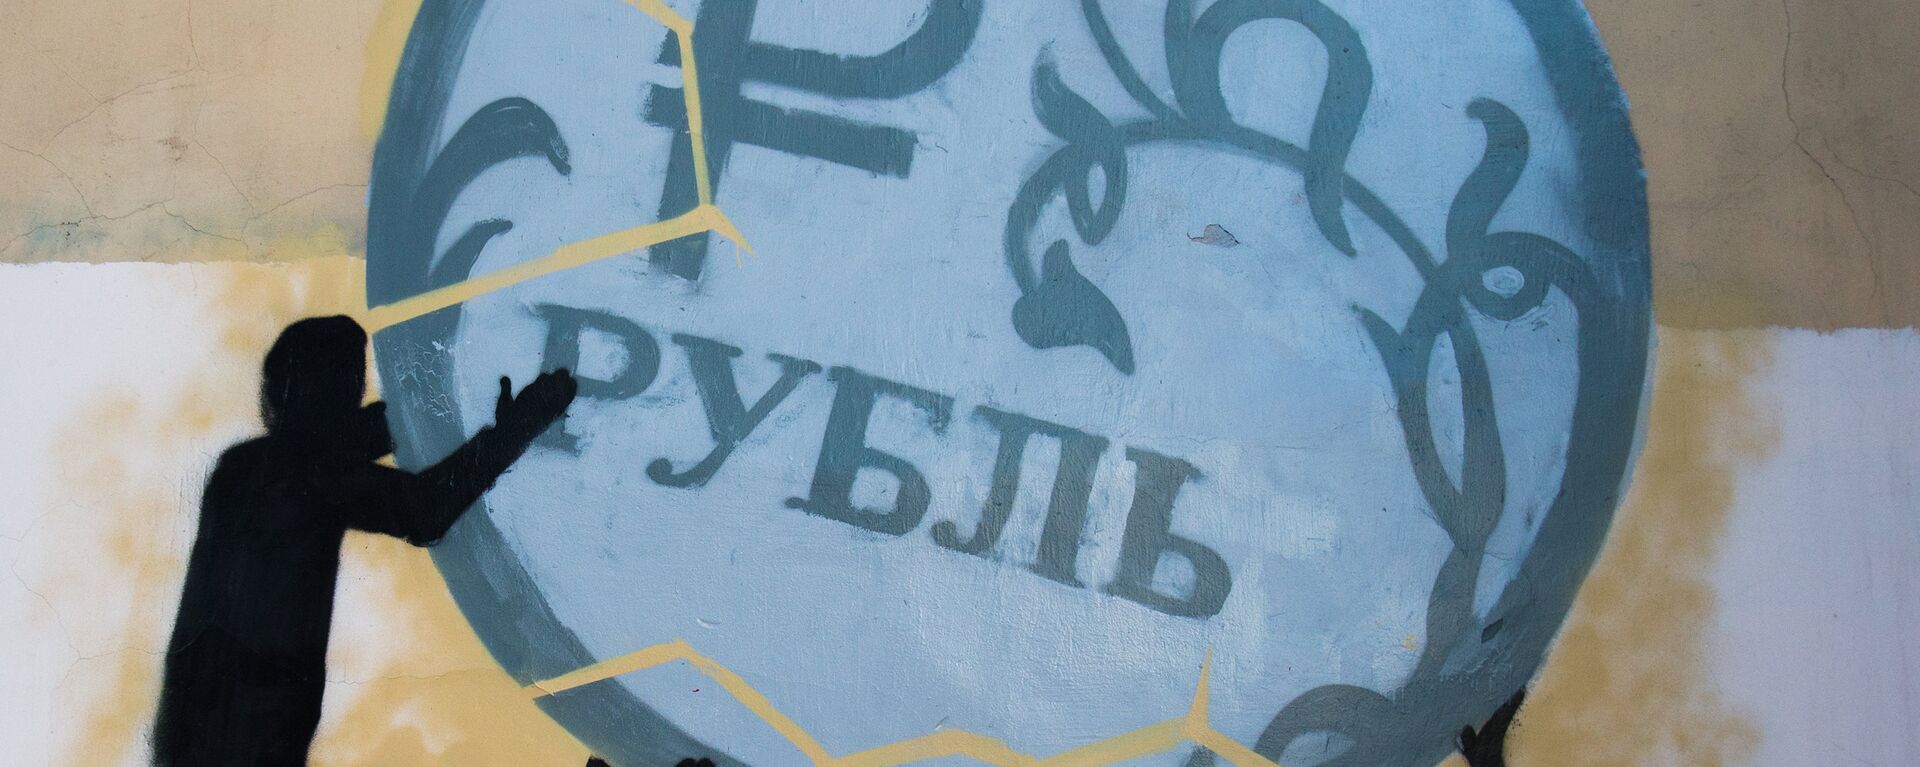 Графит подршке рубљи у Санкт Петербургу - Sputnik Србија, 1920, 28.03.2022